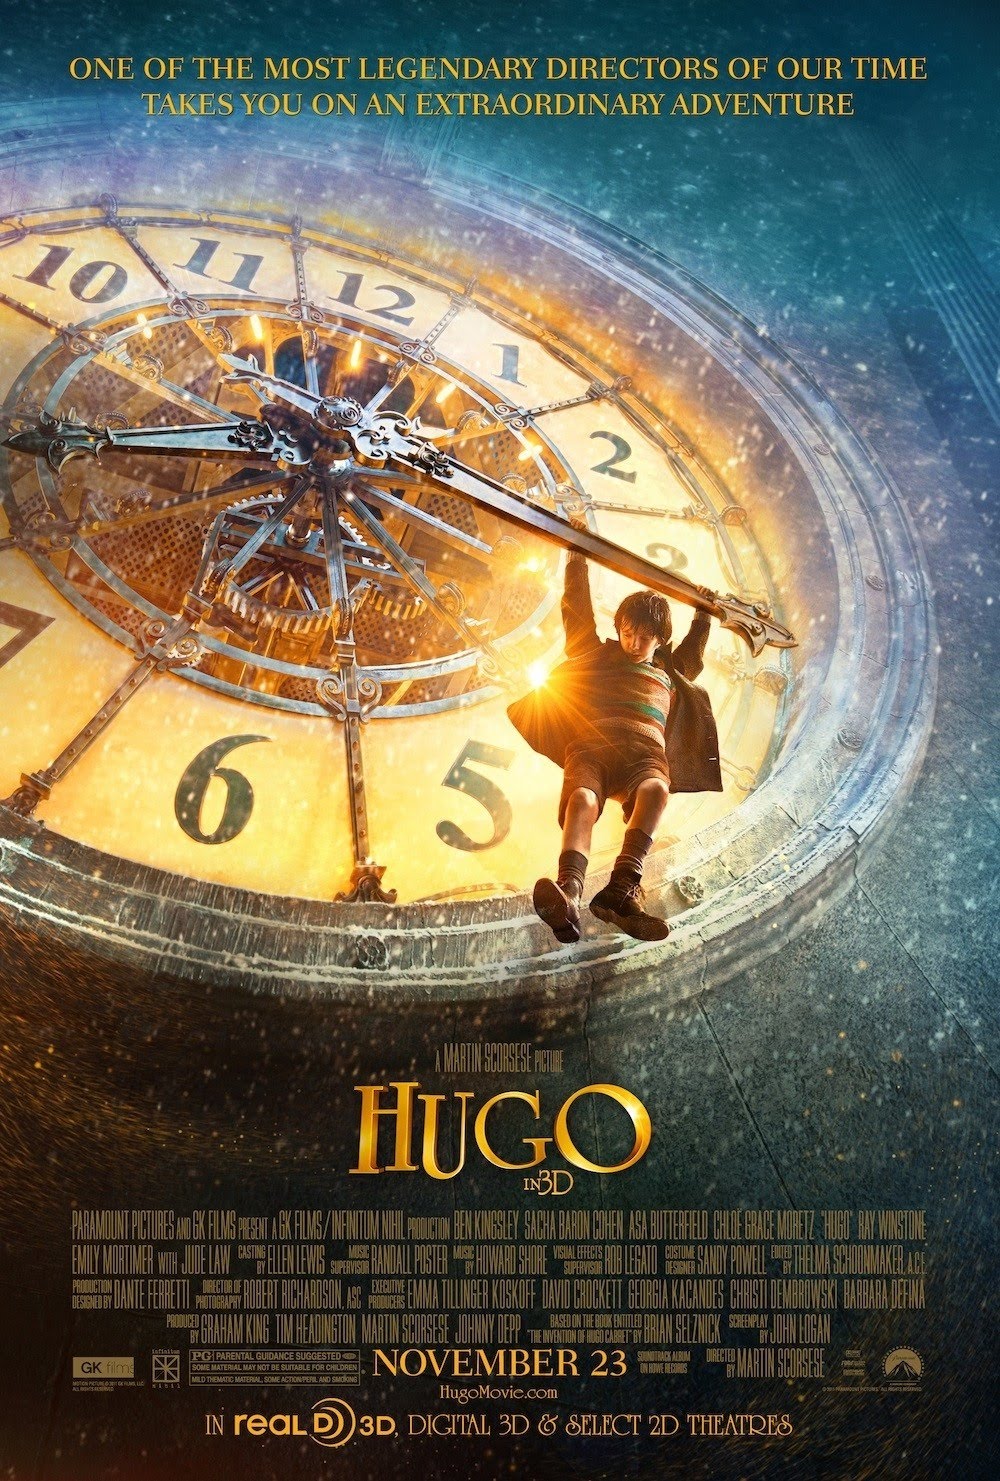 hugo-film-poster.jpg?w=691